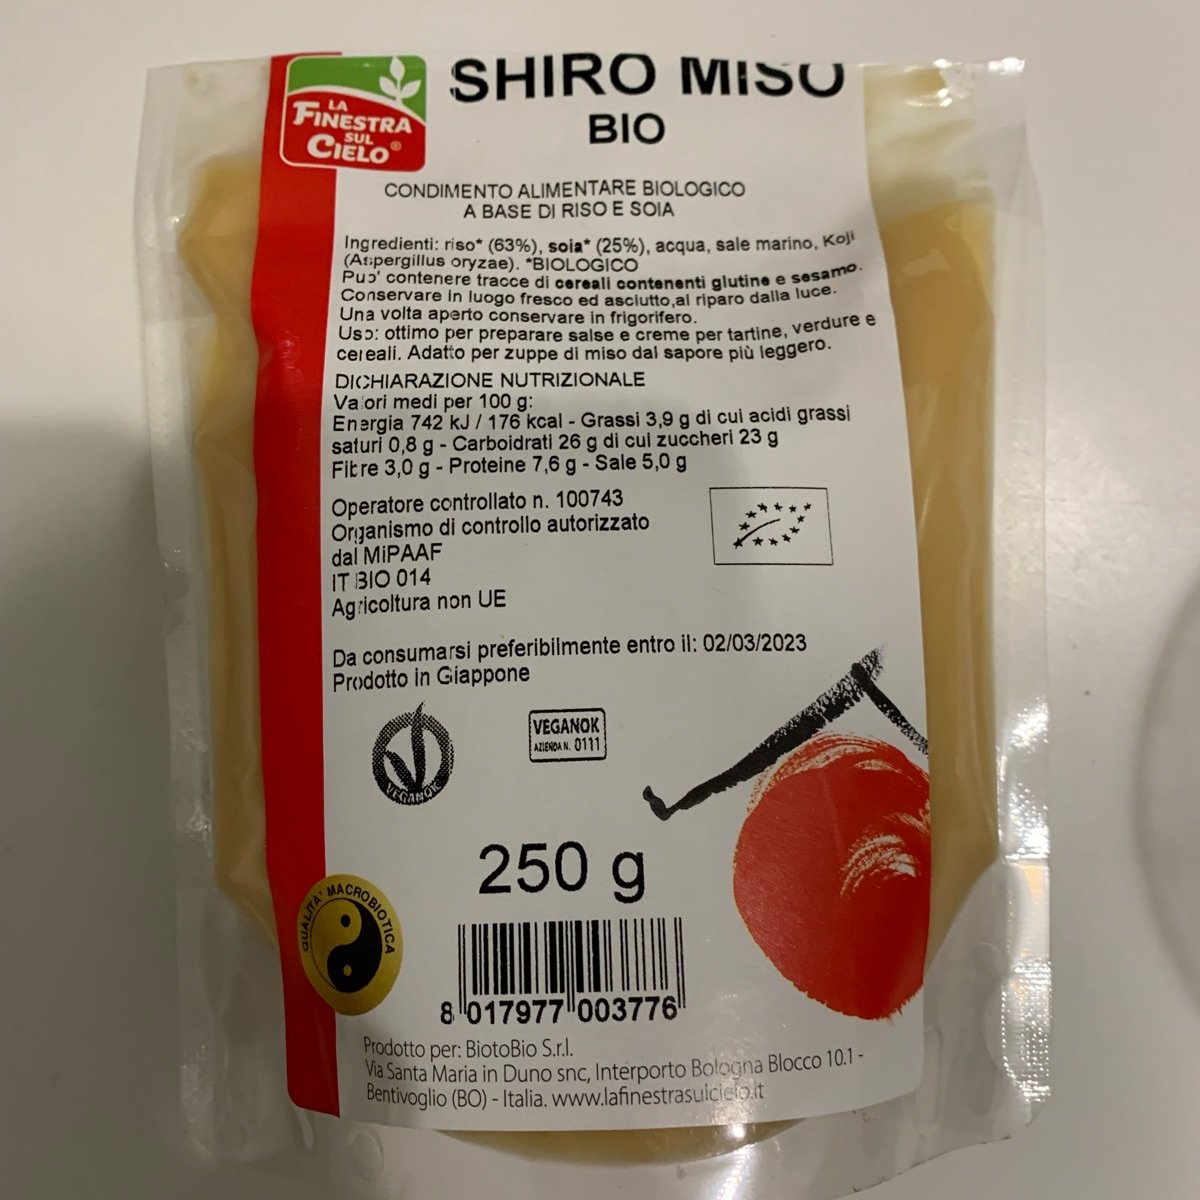 Shiro miso - Miso di riso e soia - La Finestra sul Cielo